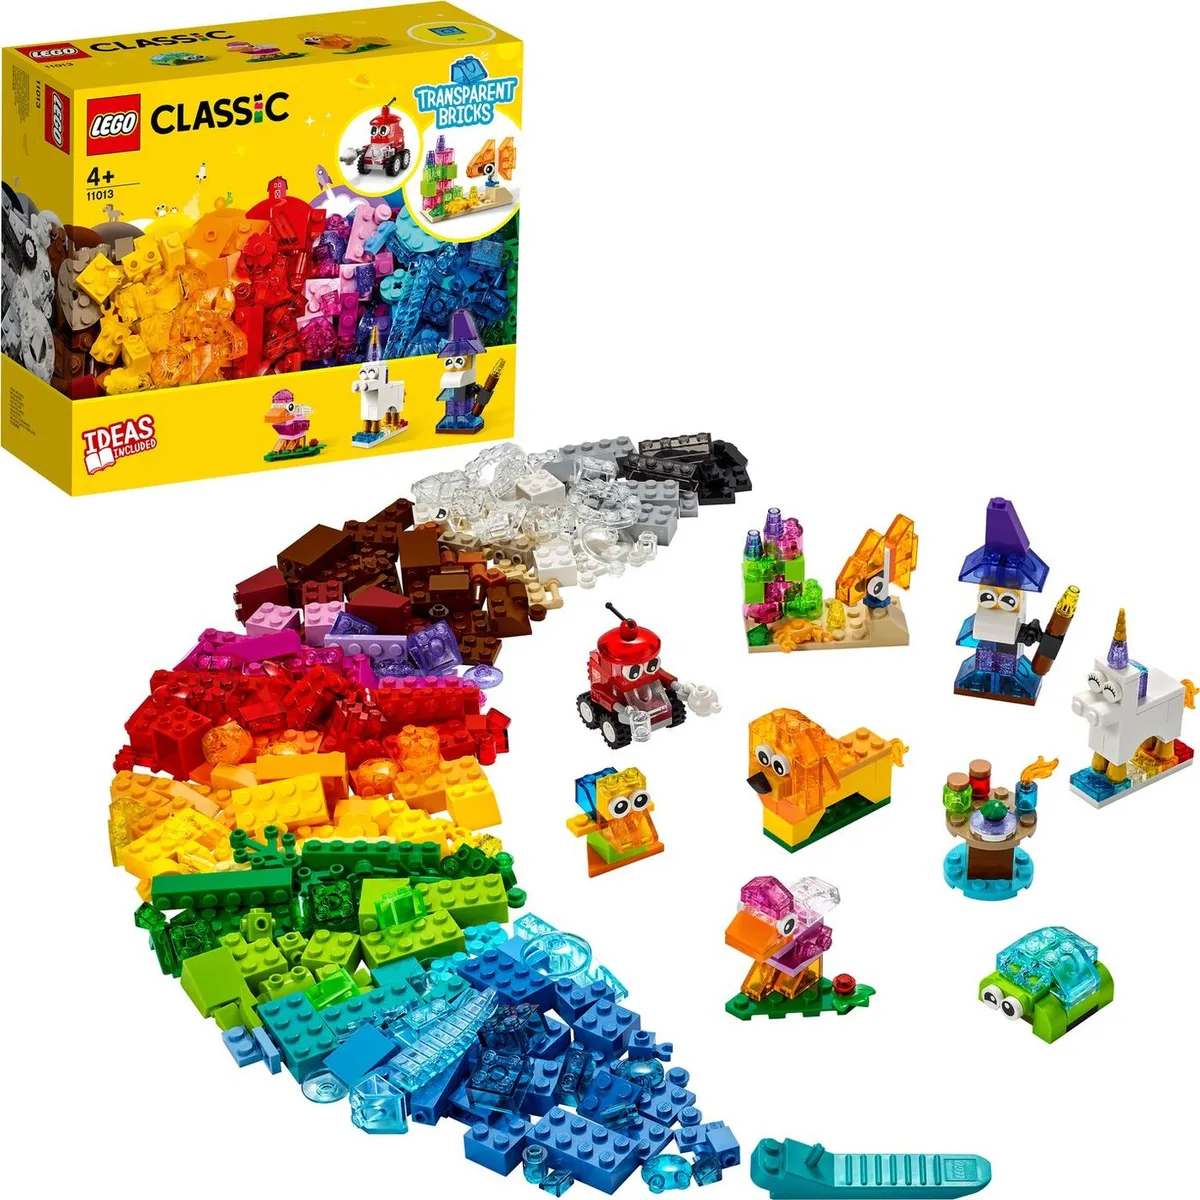 Конструктор LEGO CLASSIC Прозрачные кубики 11013